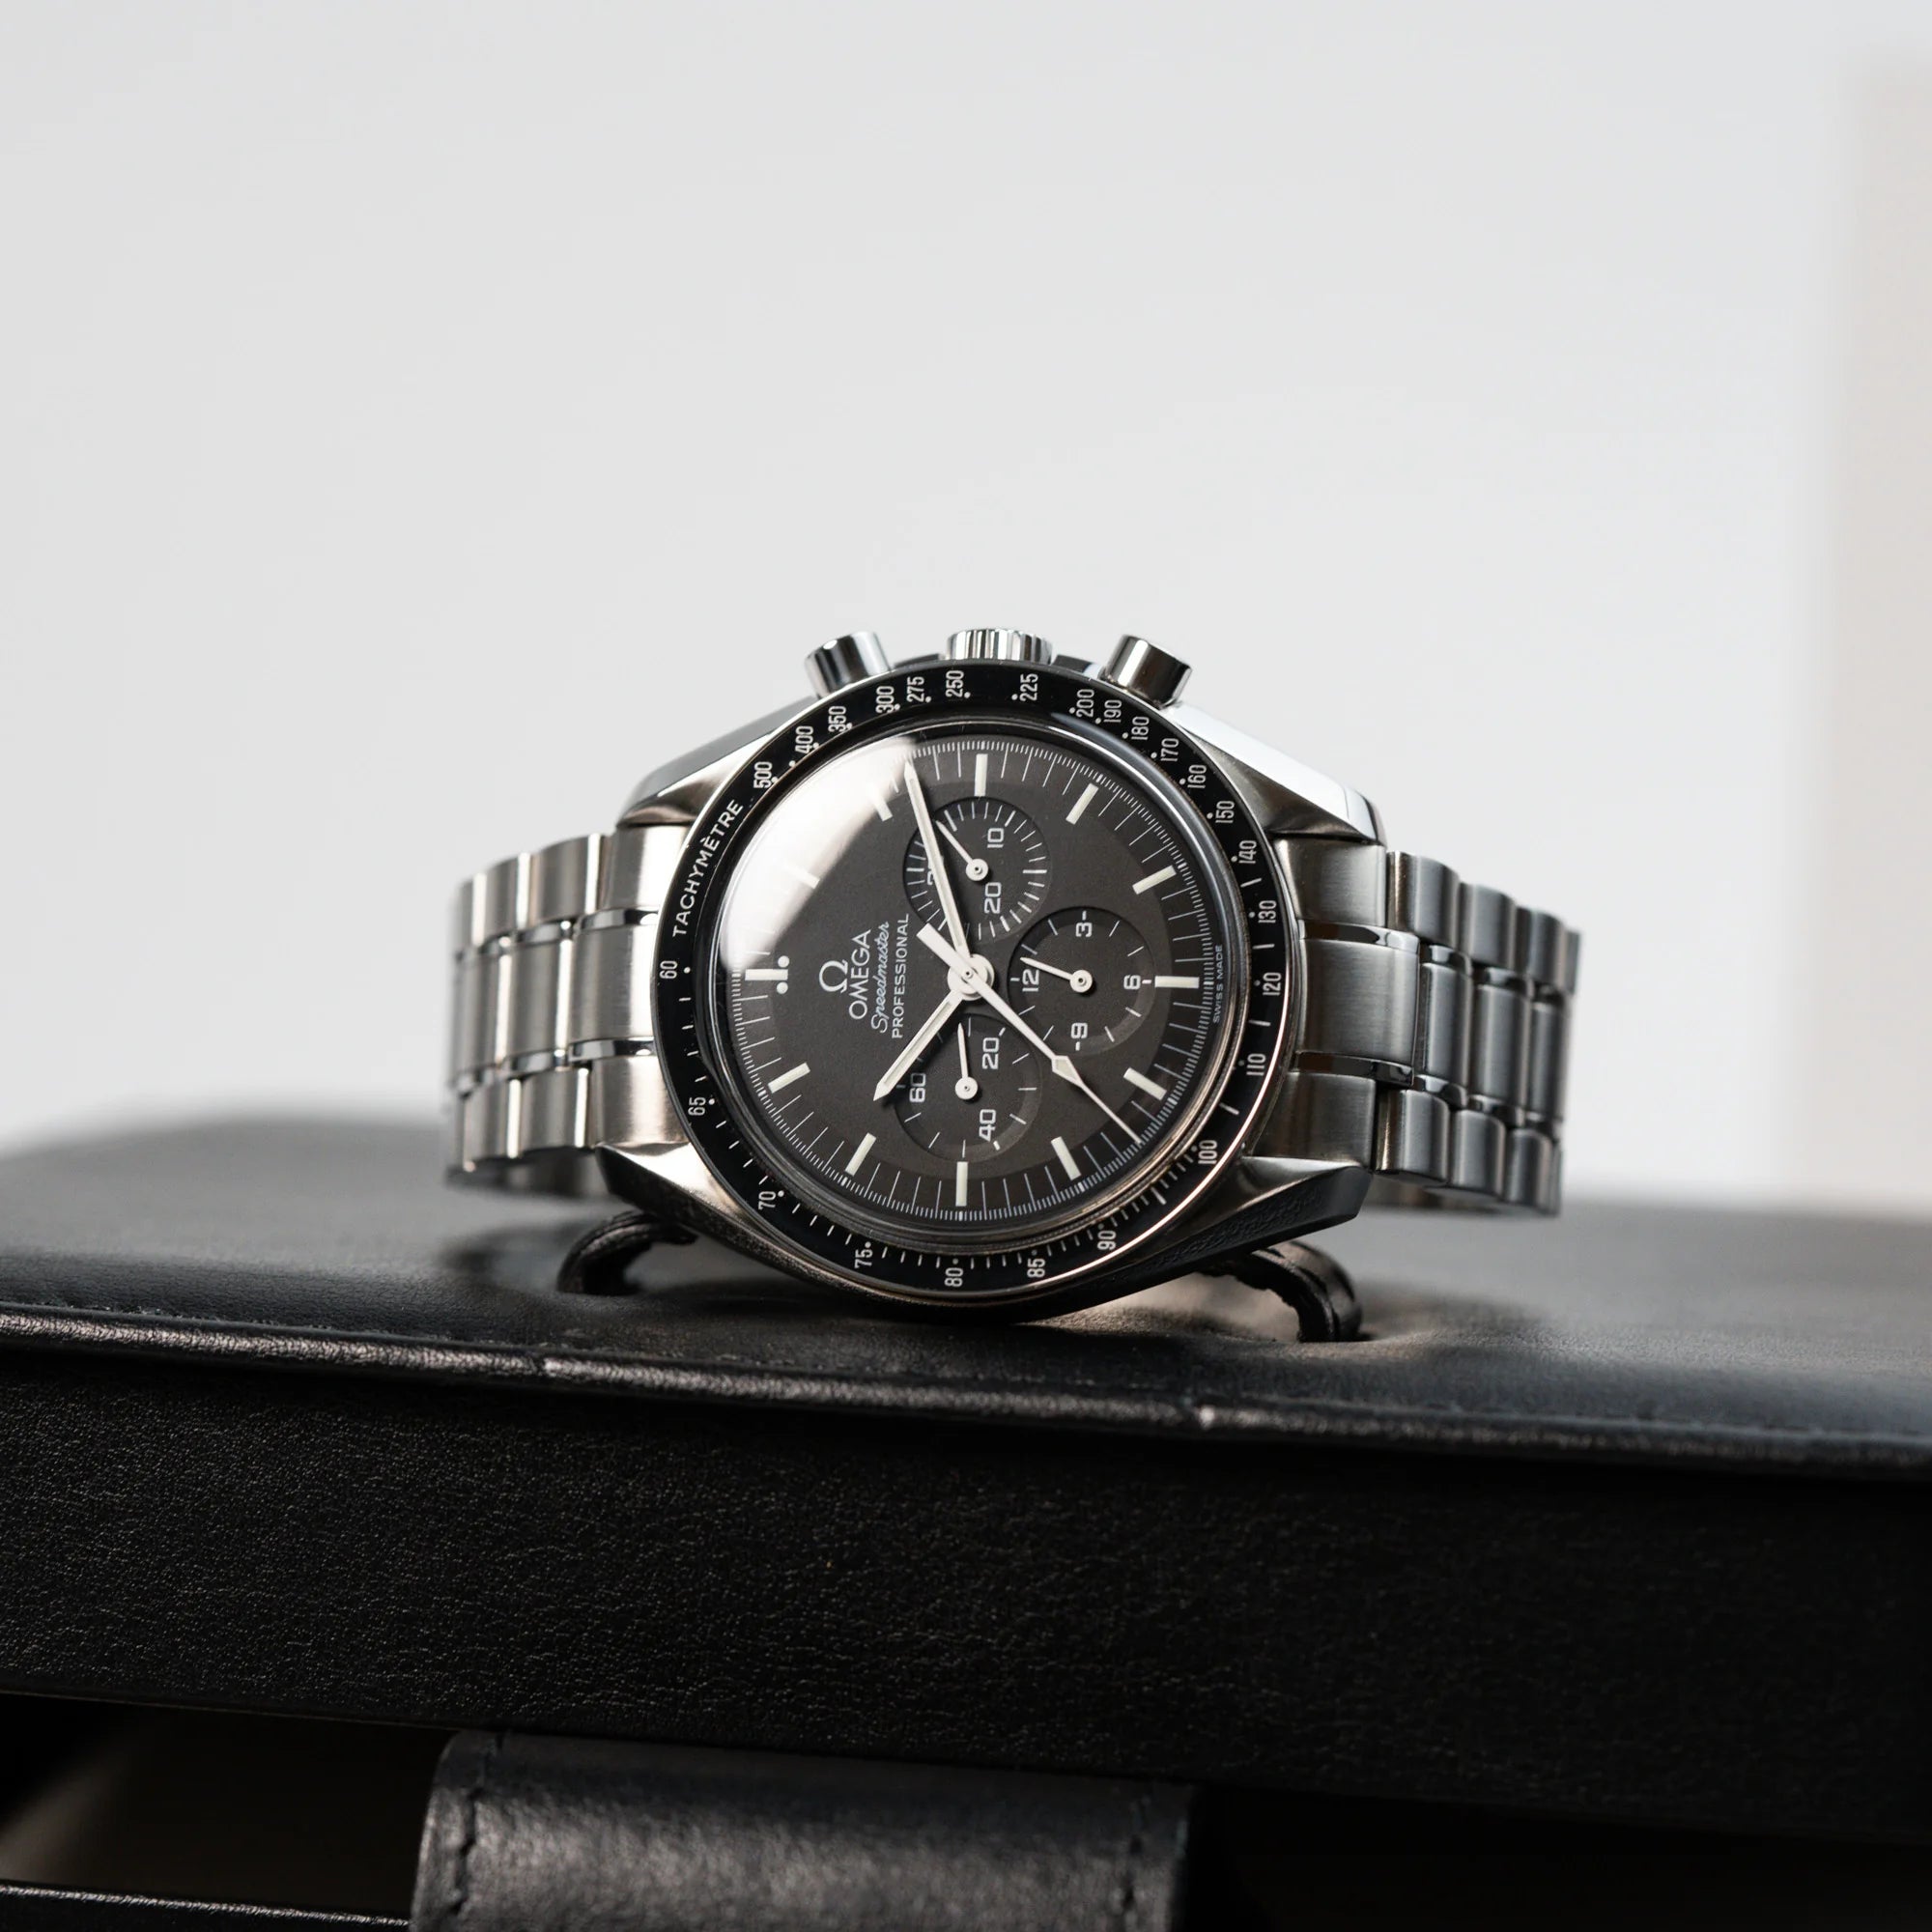 Omega Speedmaster Moonwatch Professional mit der Referenz 357.50.00 mit dem klassischen schwarzen Zifferblatt liegt auf der originalen Uhrenbox